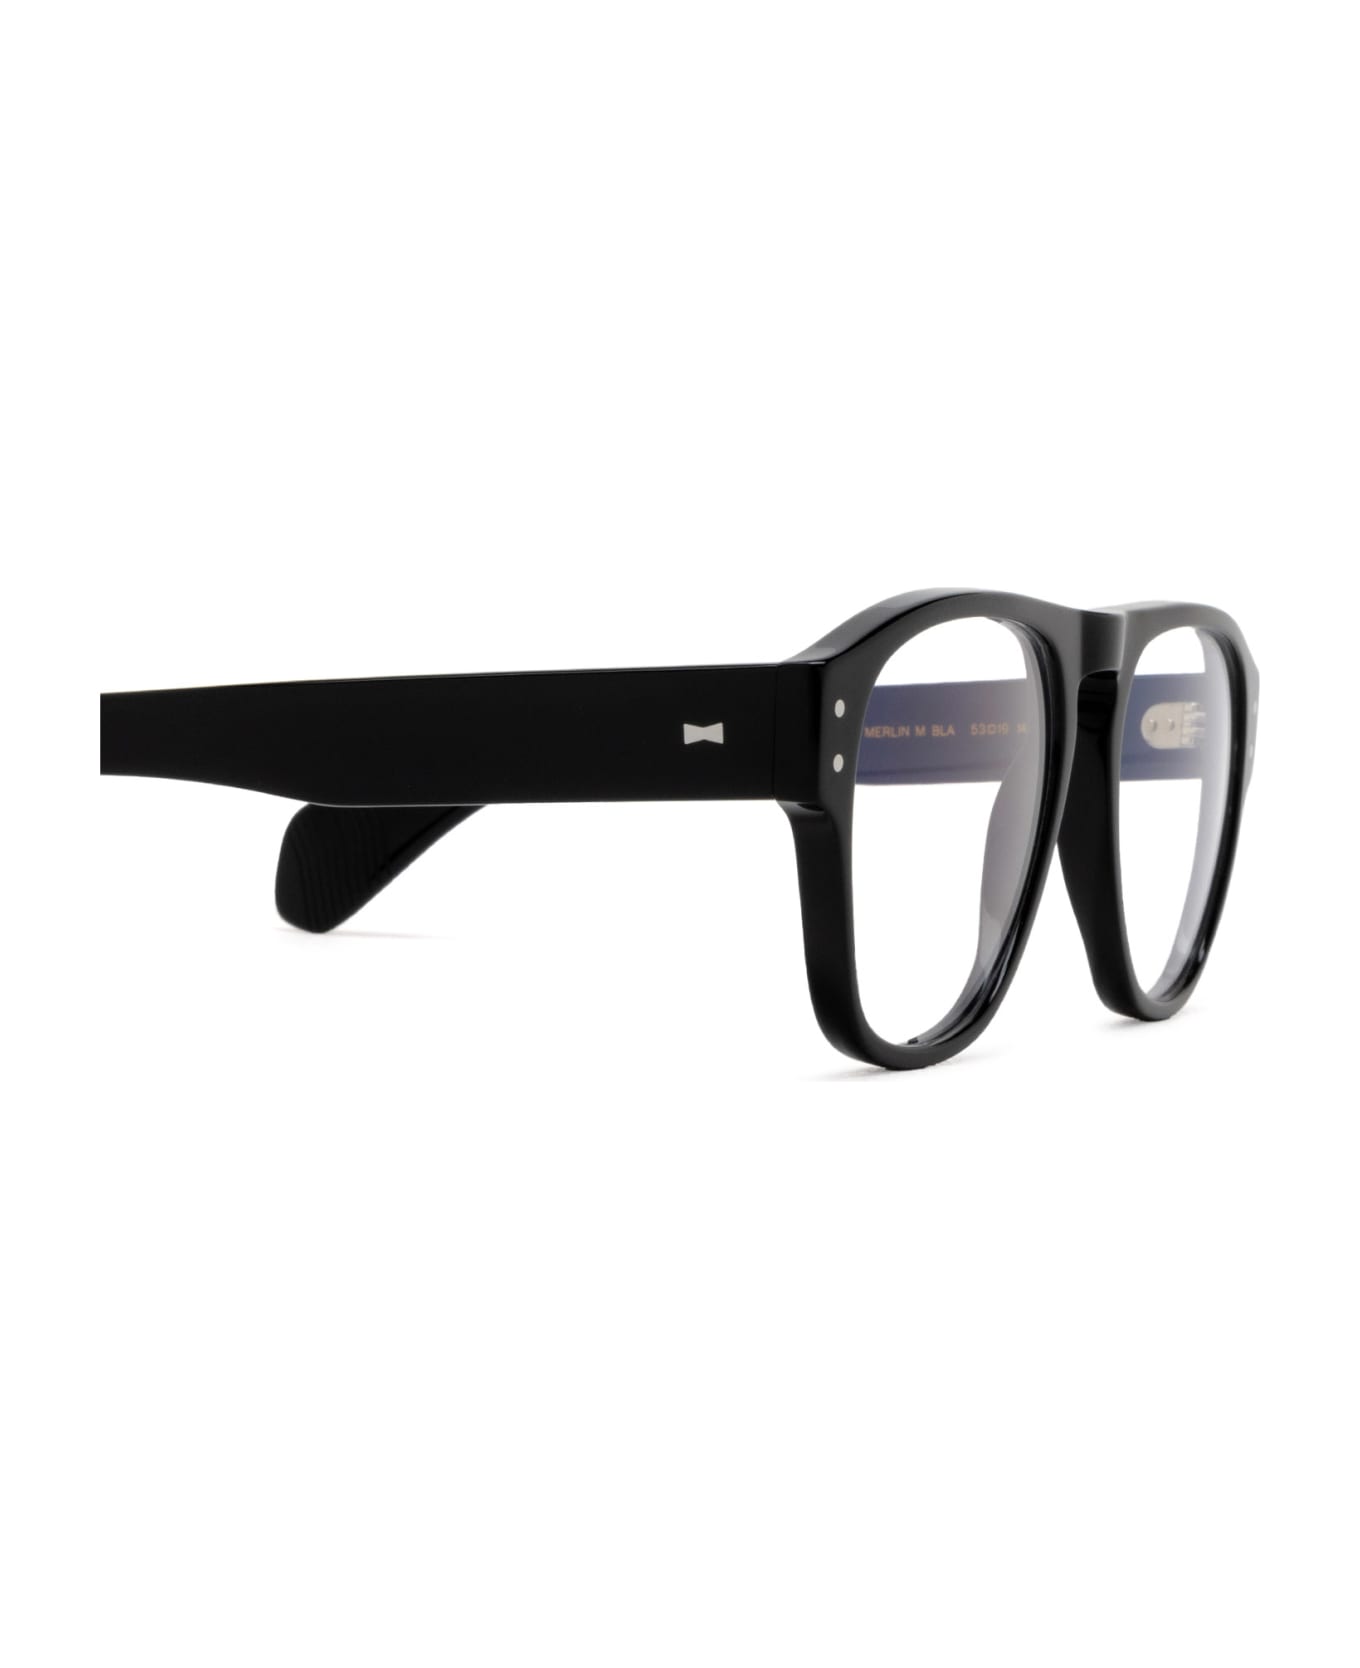 Cubitts Merlin Black Glasses - Black